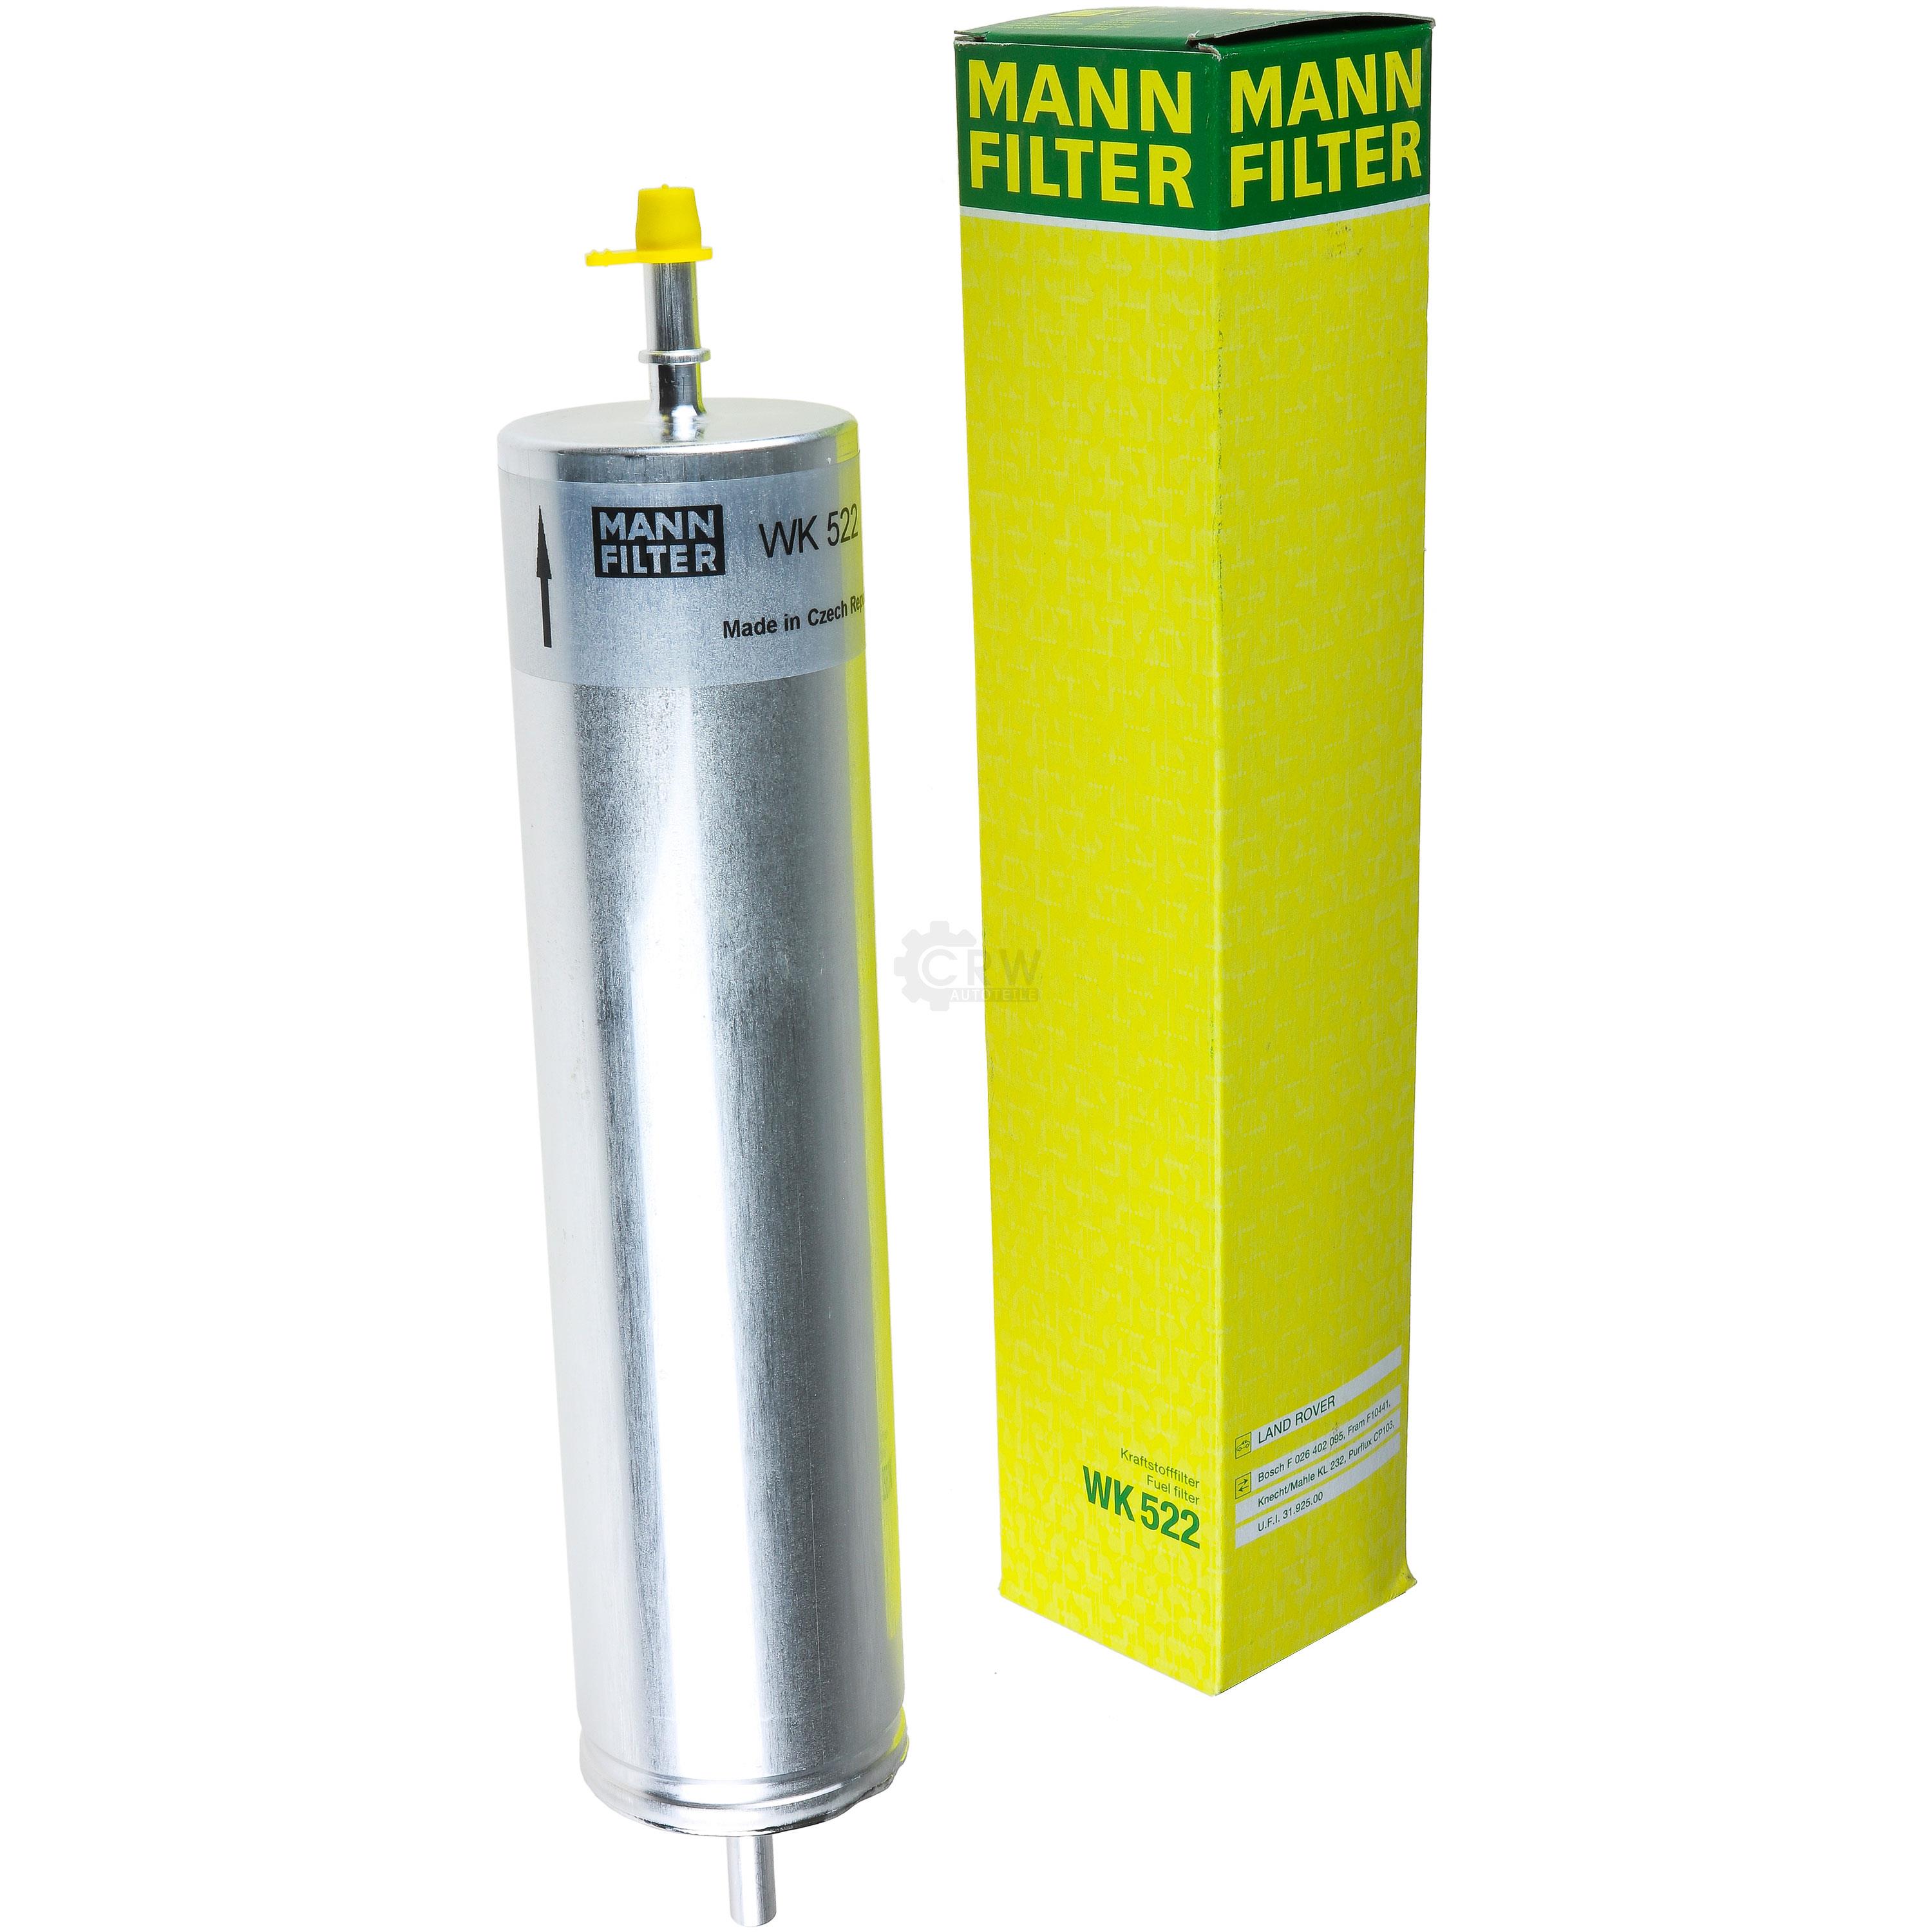 MANN-FILTER Kraftstofffilter WK 522 Fuel Filter